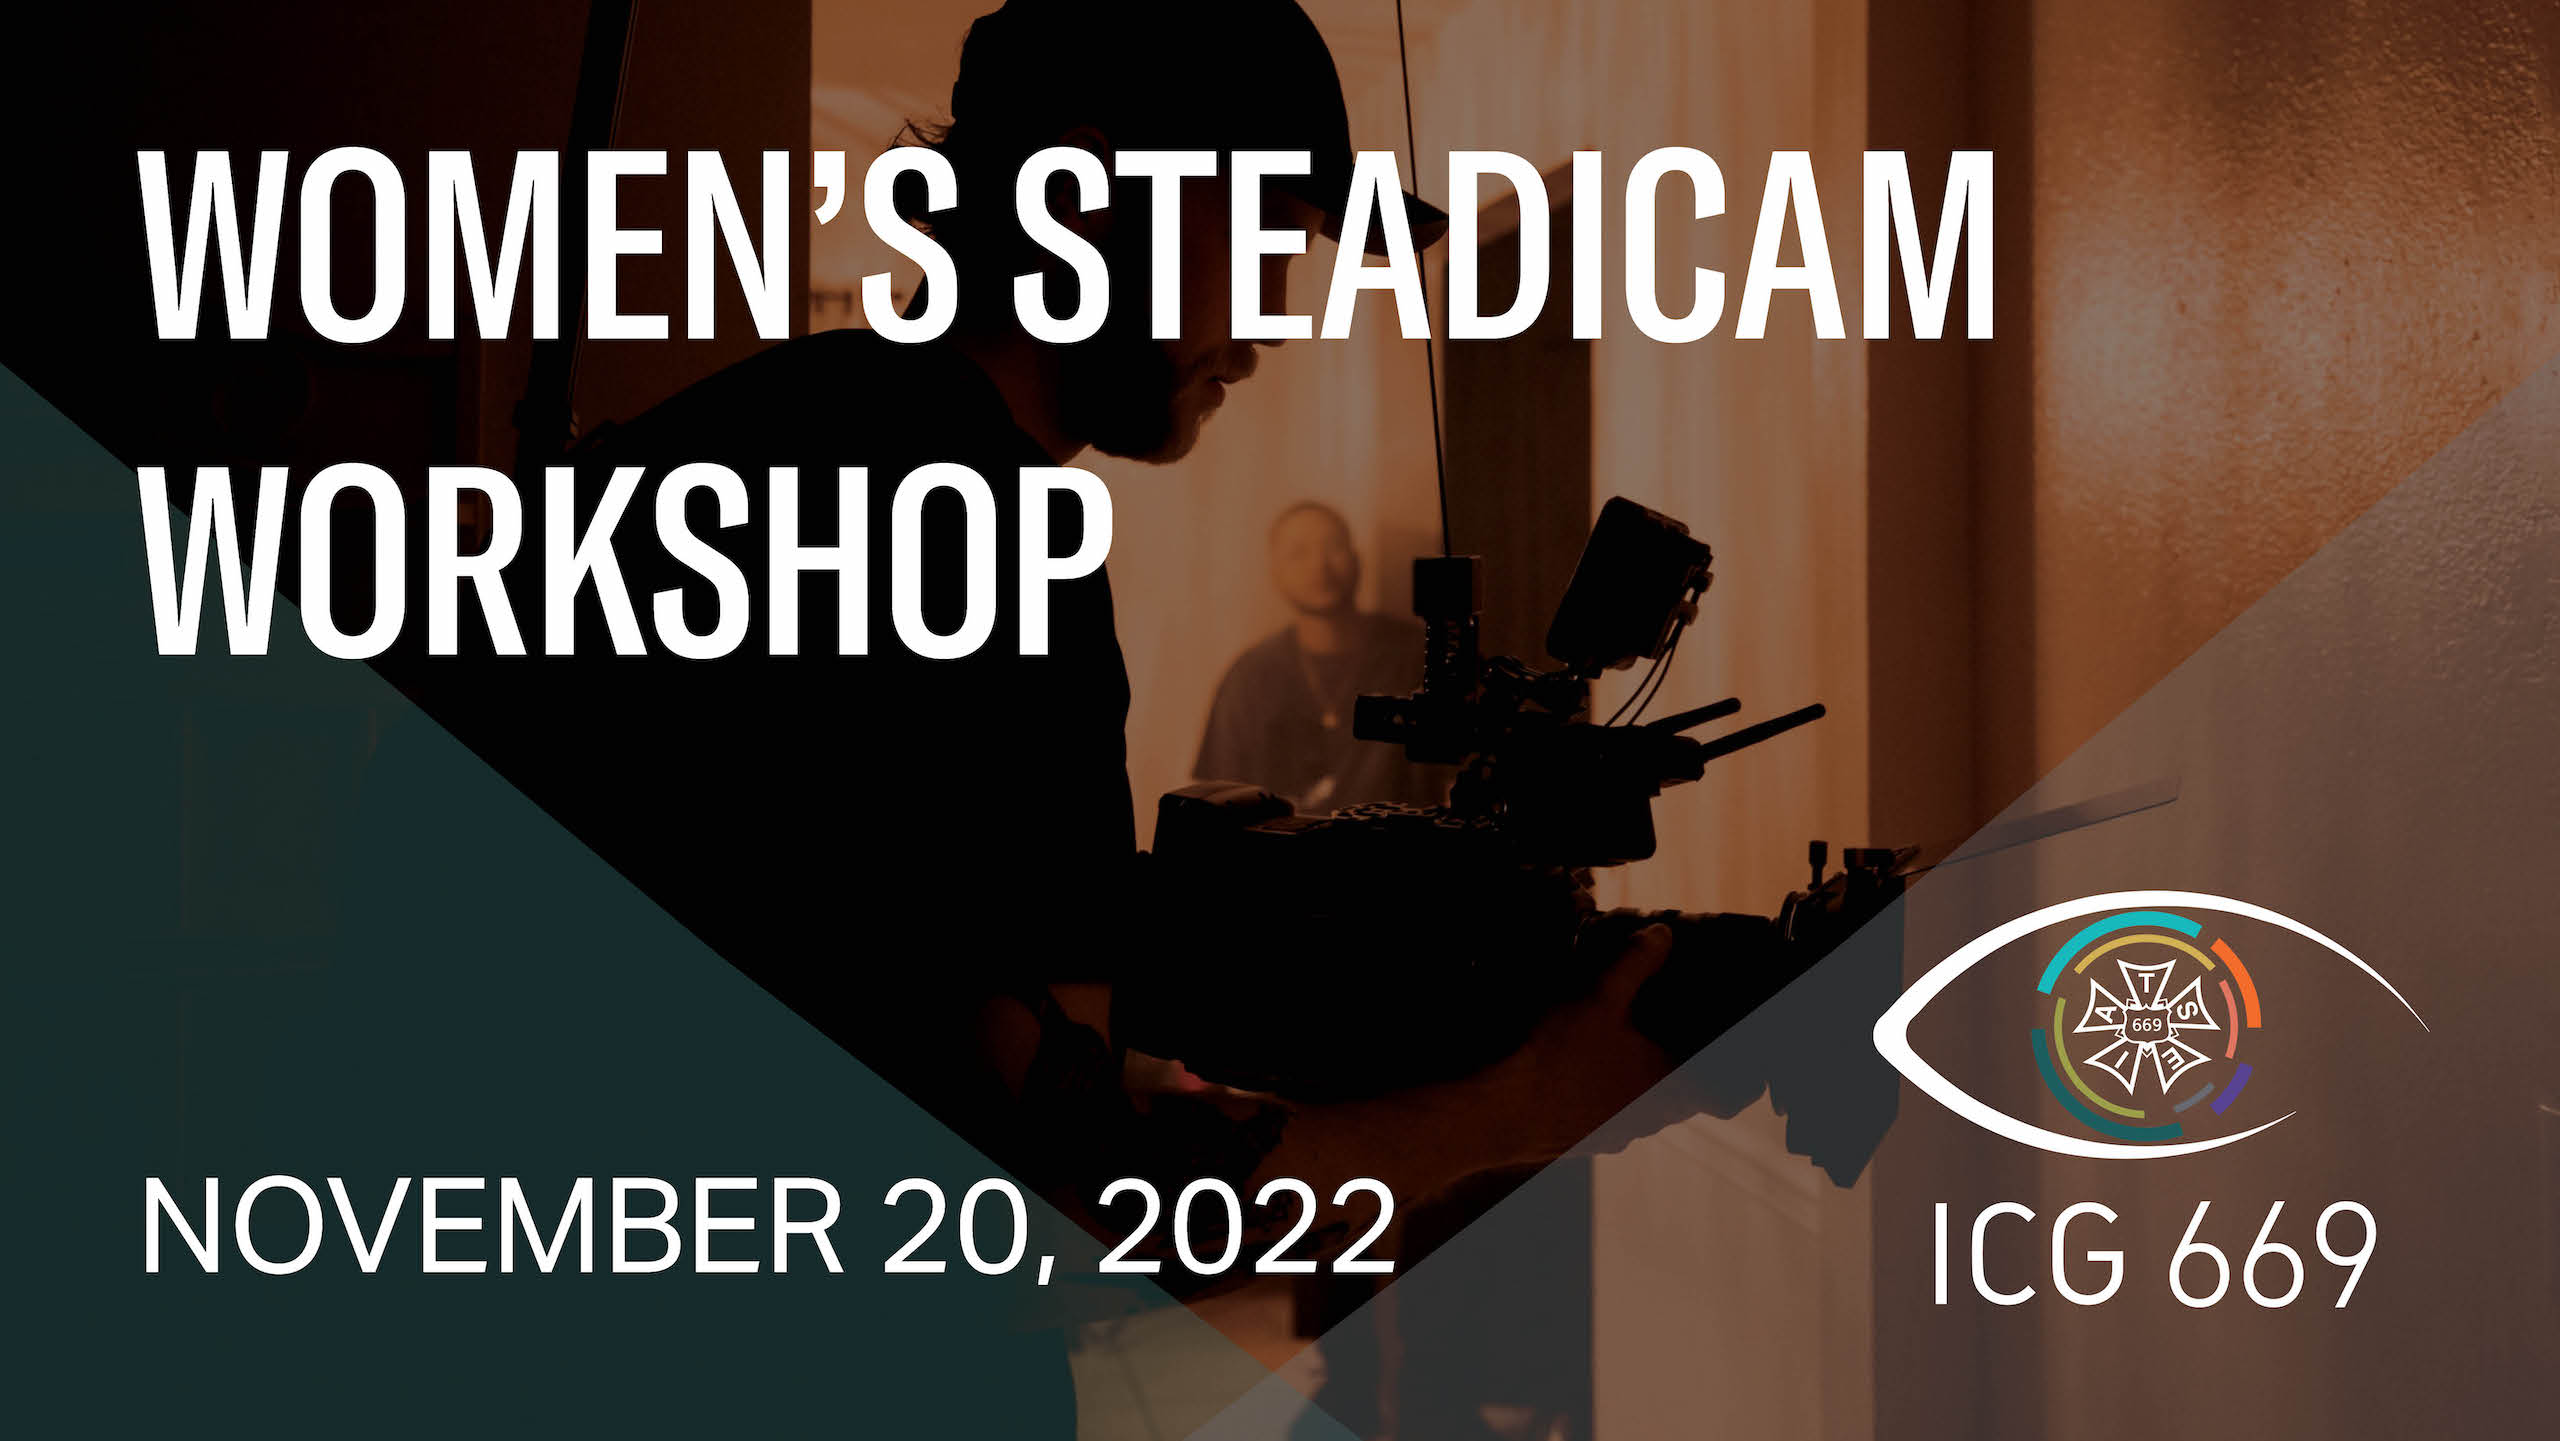 Women's Steadicam Workshop